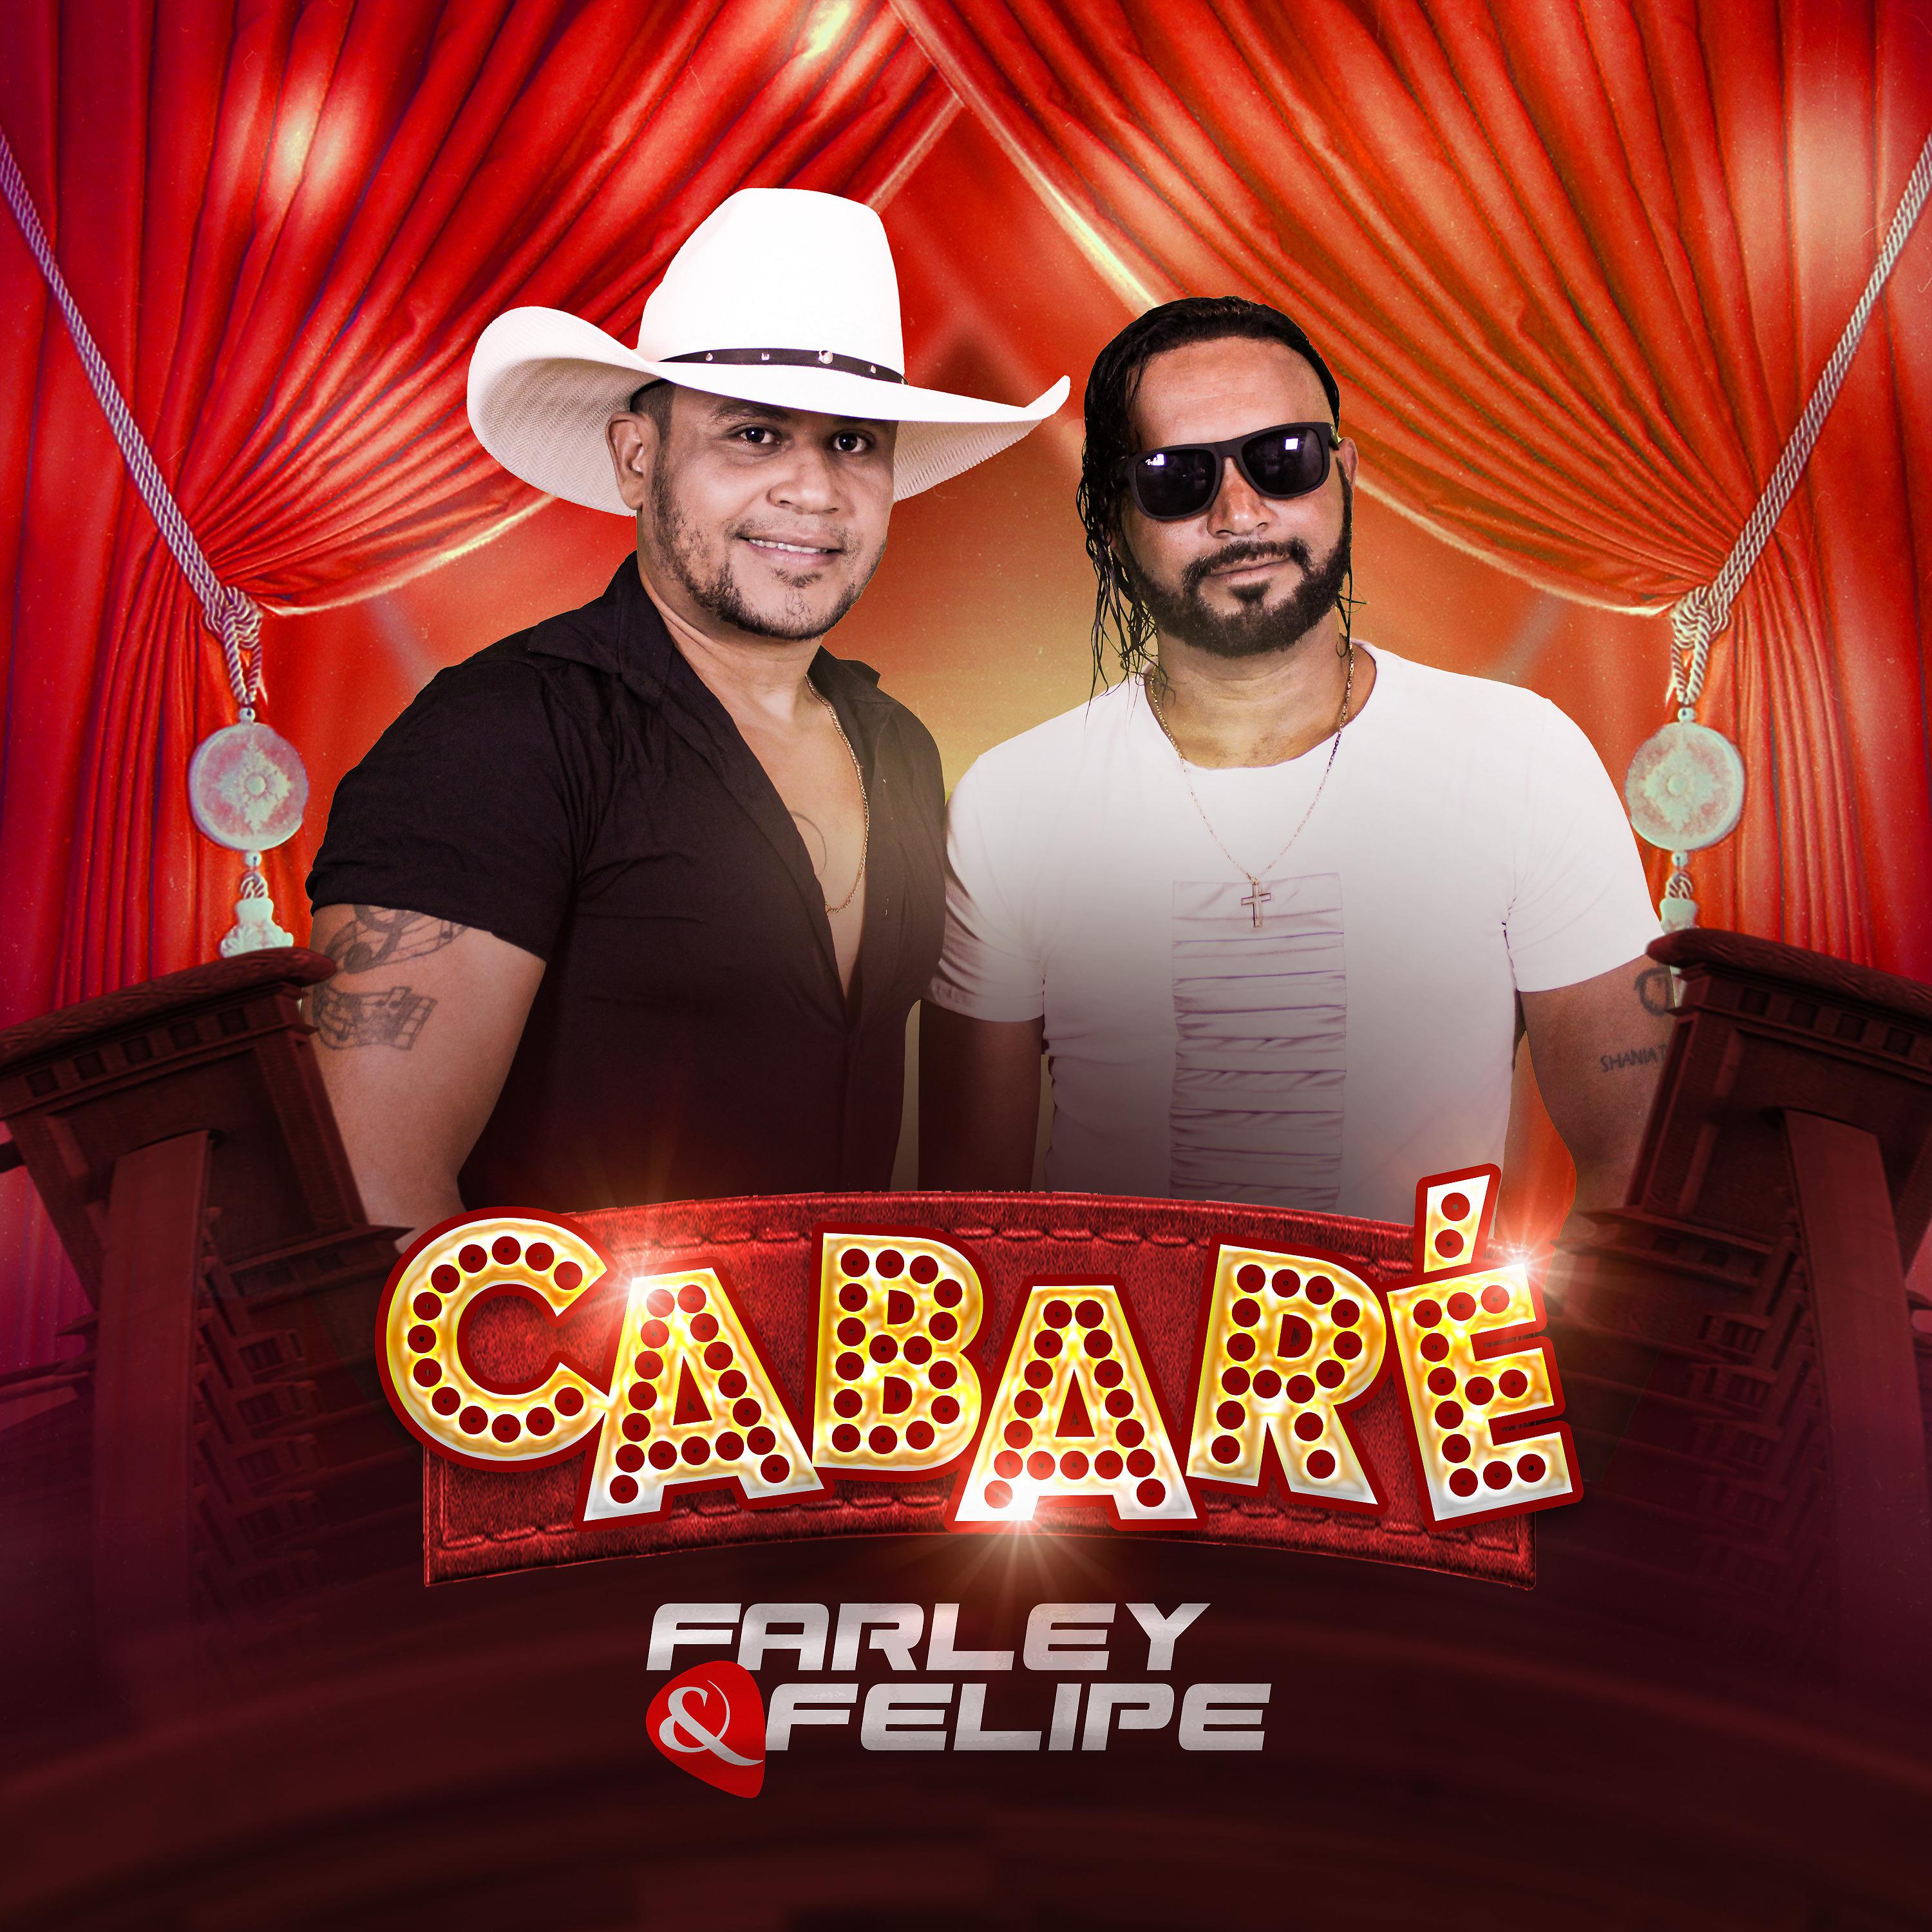 Постер альбома Cabaré